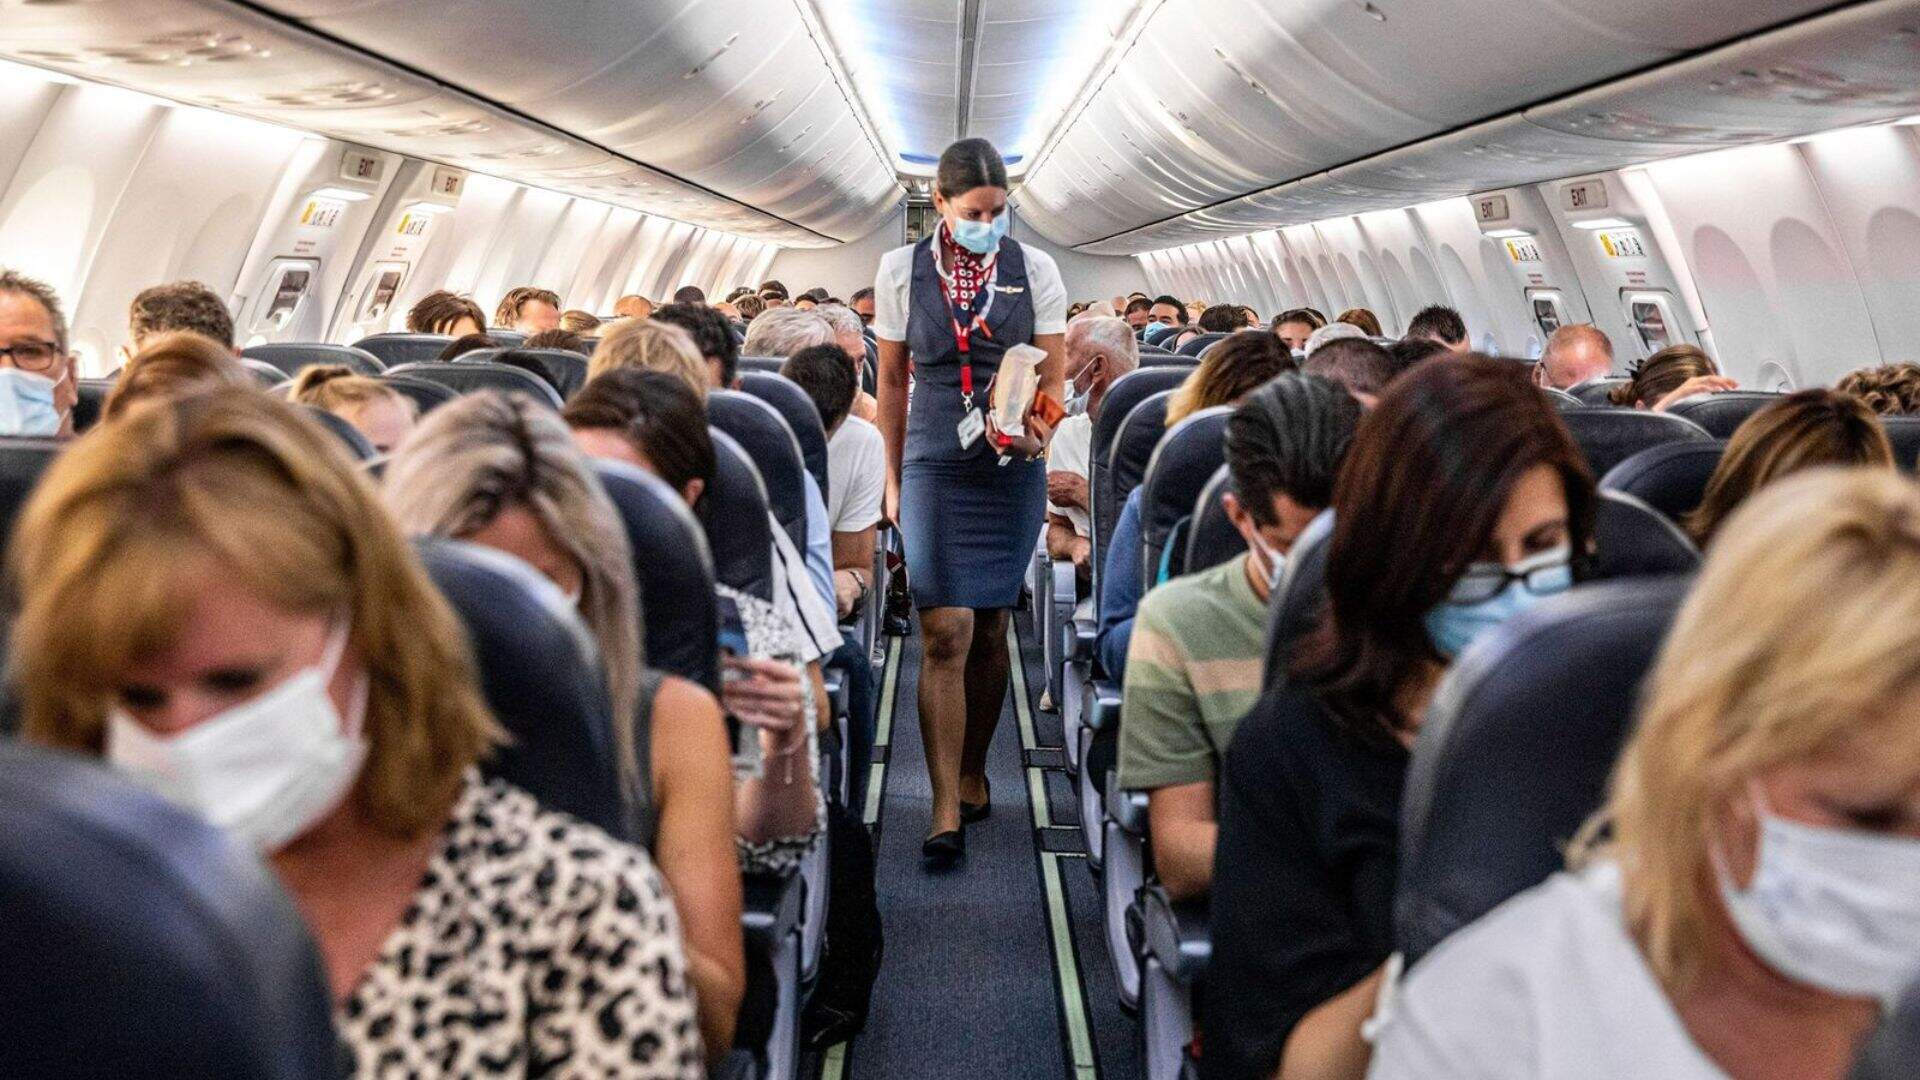 Barraco em avião! Passageiros encrenqueiros devem sofrer punições graves após mudança de lei - Metropolitana FM